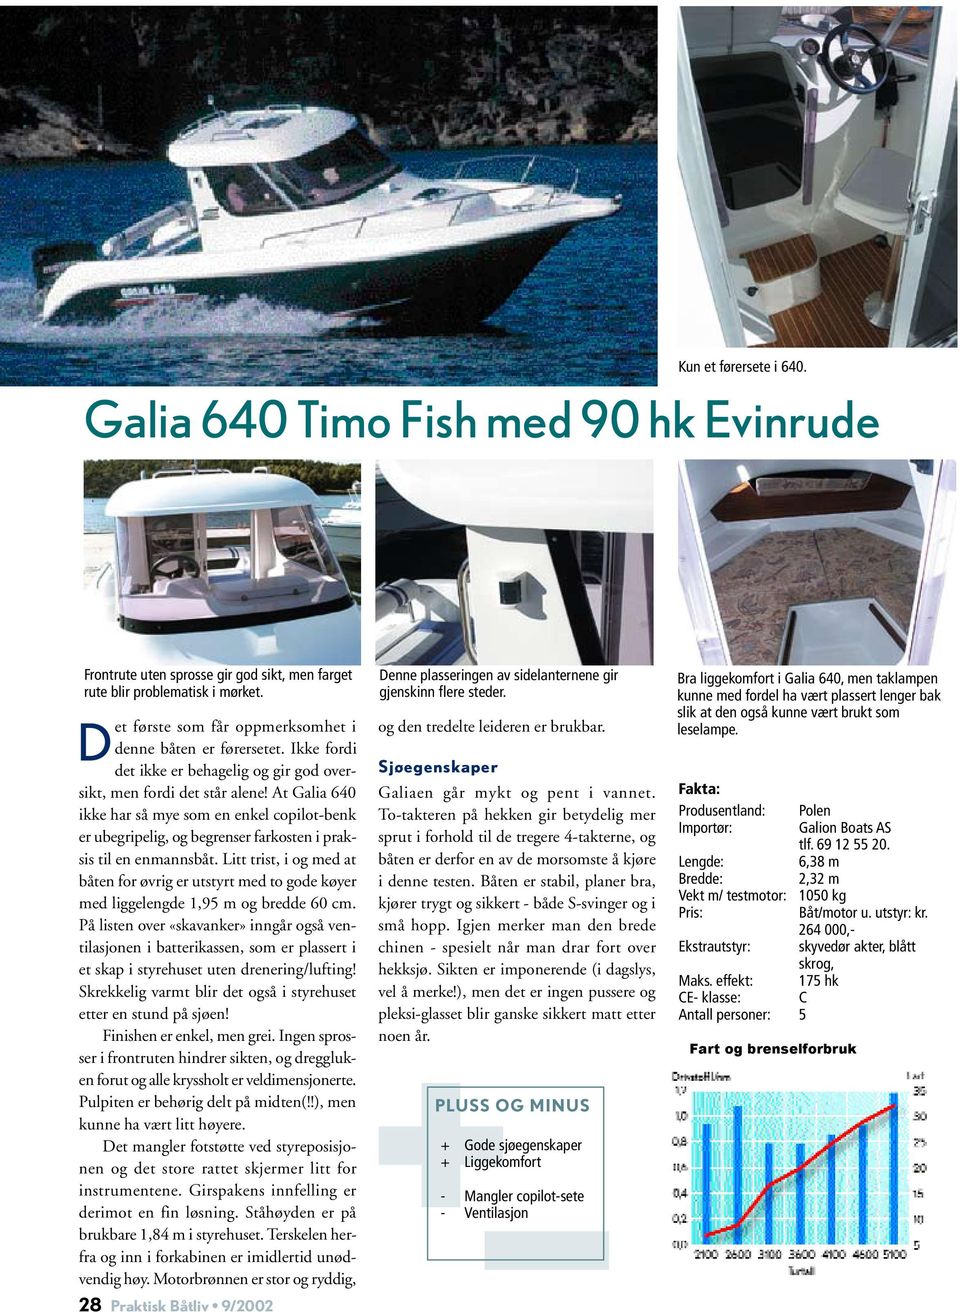 At Galia 640 ikke har så mye som en enkel copilot-benk er ubegripelig, og begrenser farkosten i praksis til en enmannsbåt.